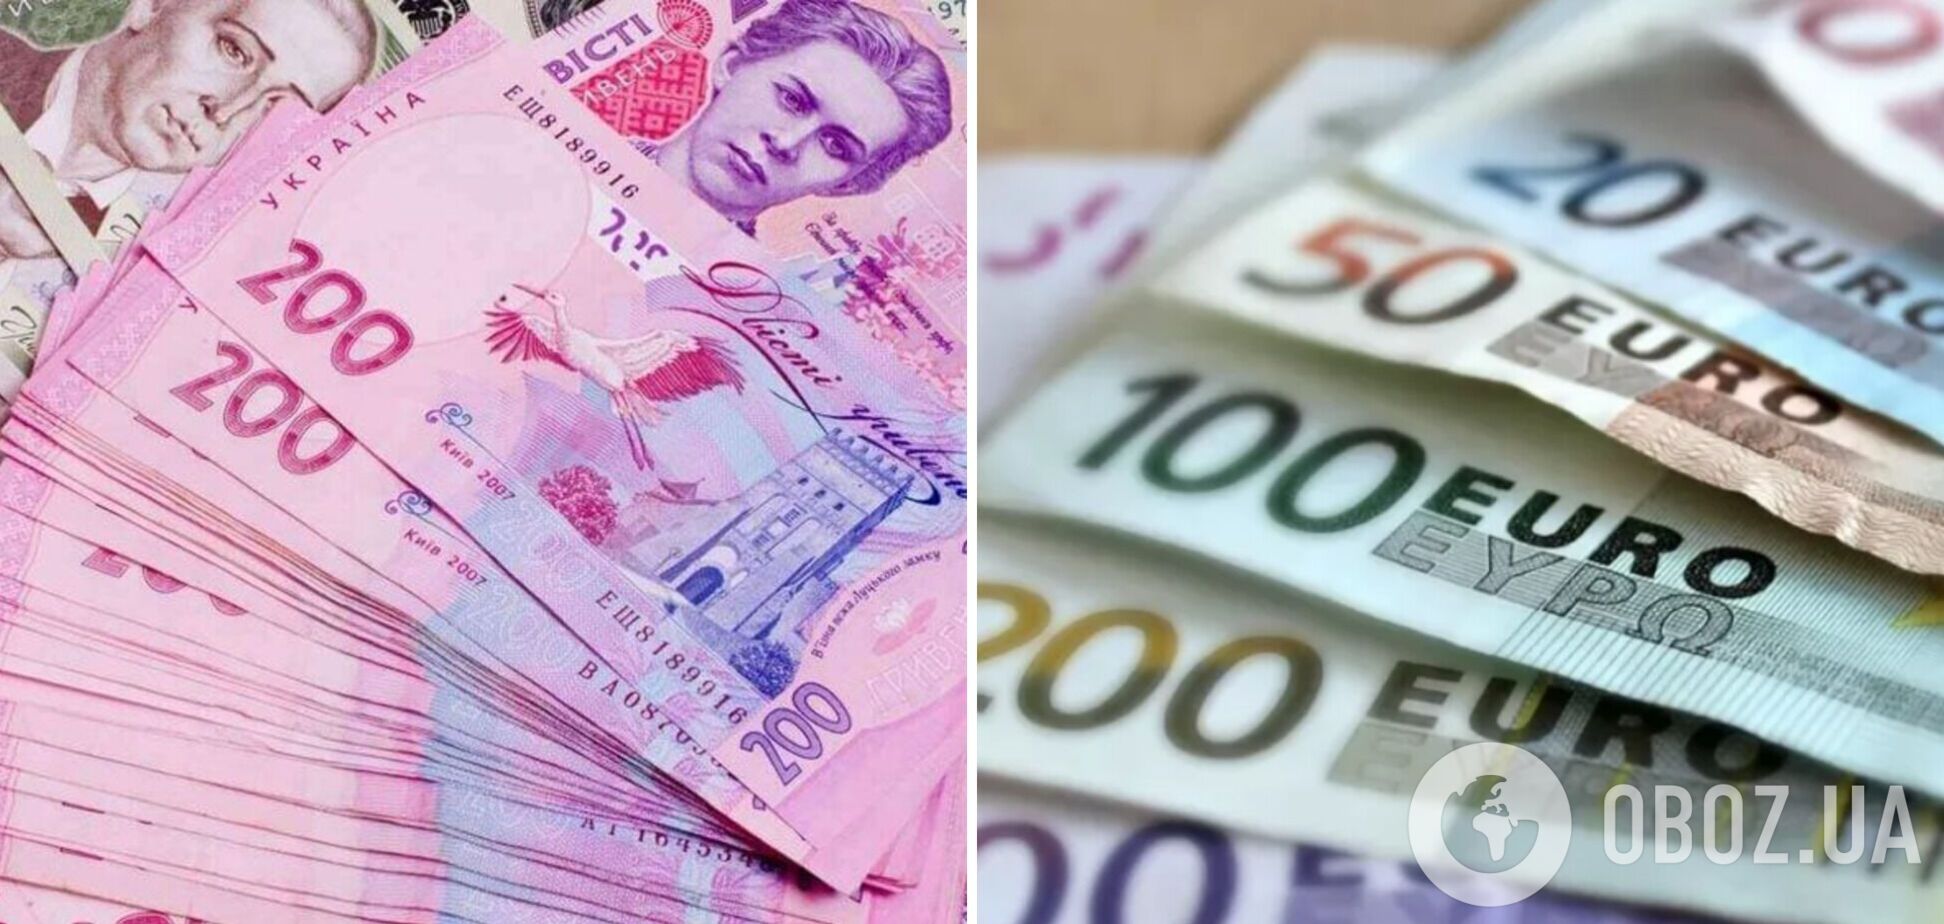 Украинцы смогут обменять наличную гривну на евро в Нидерландах